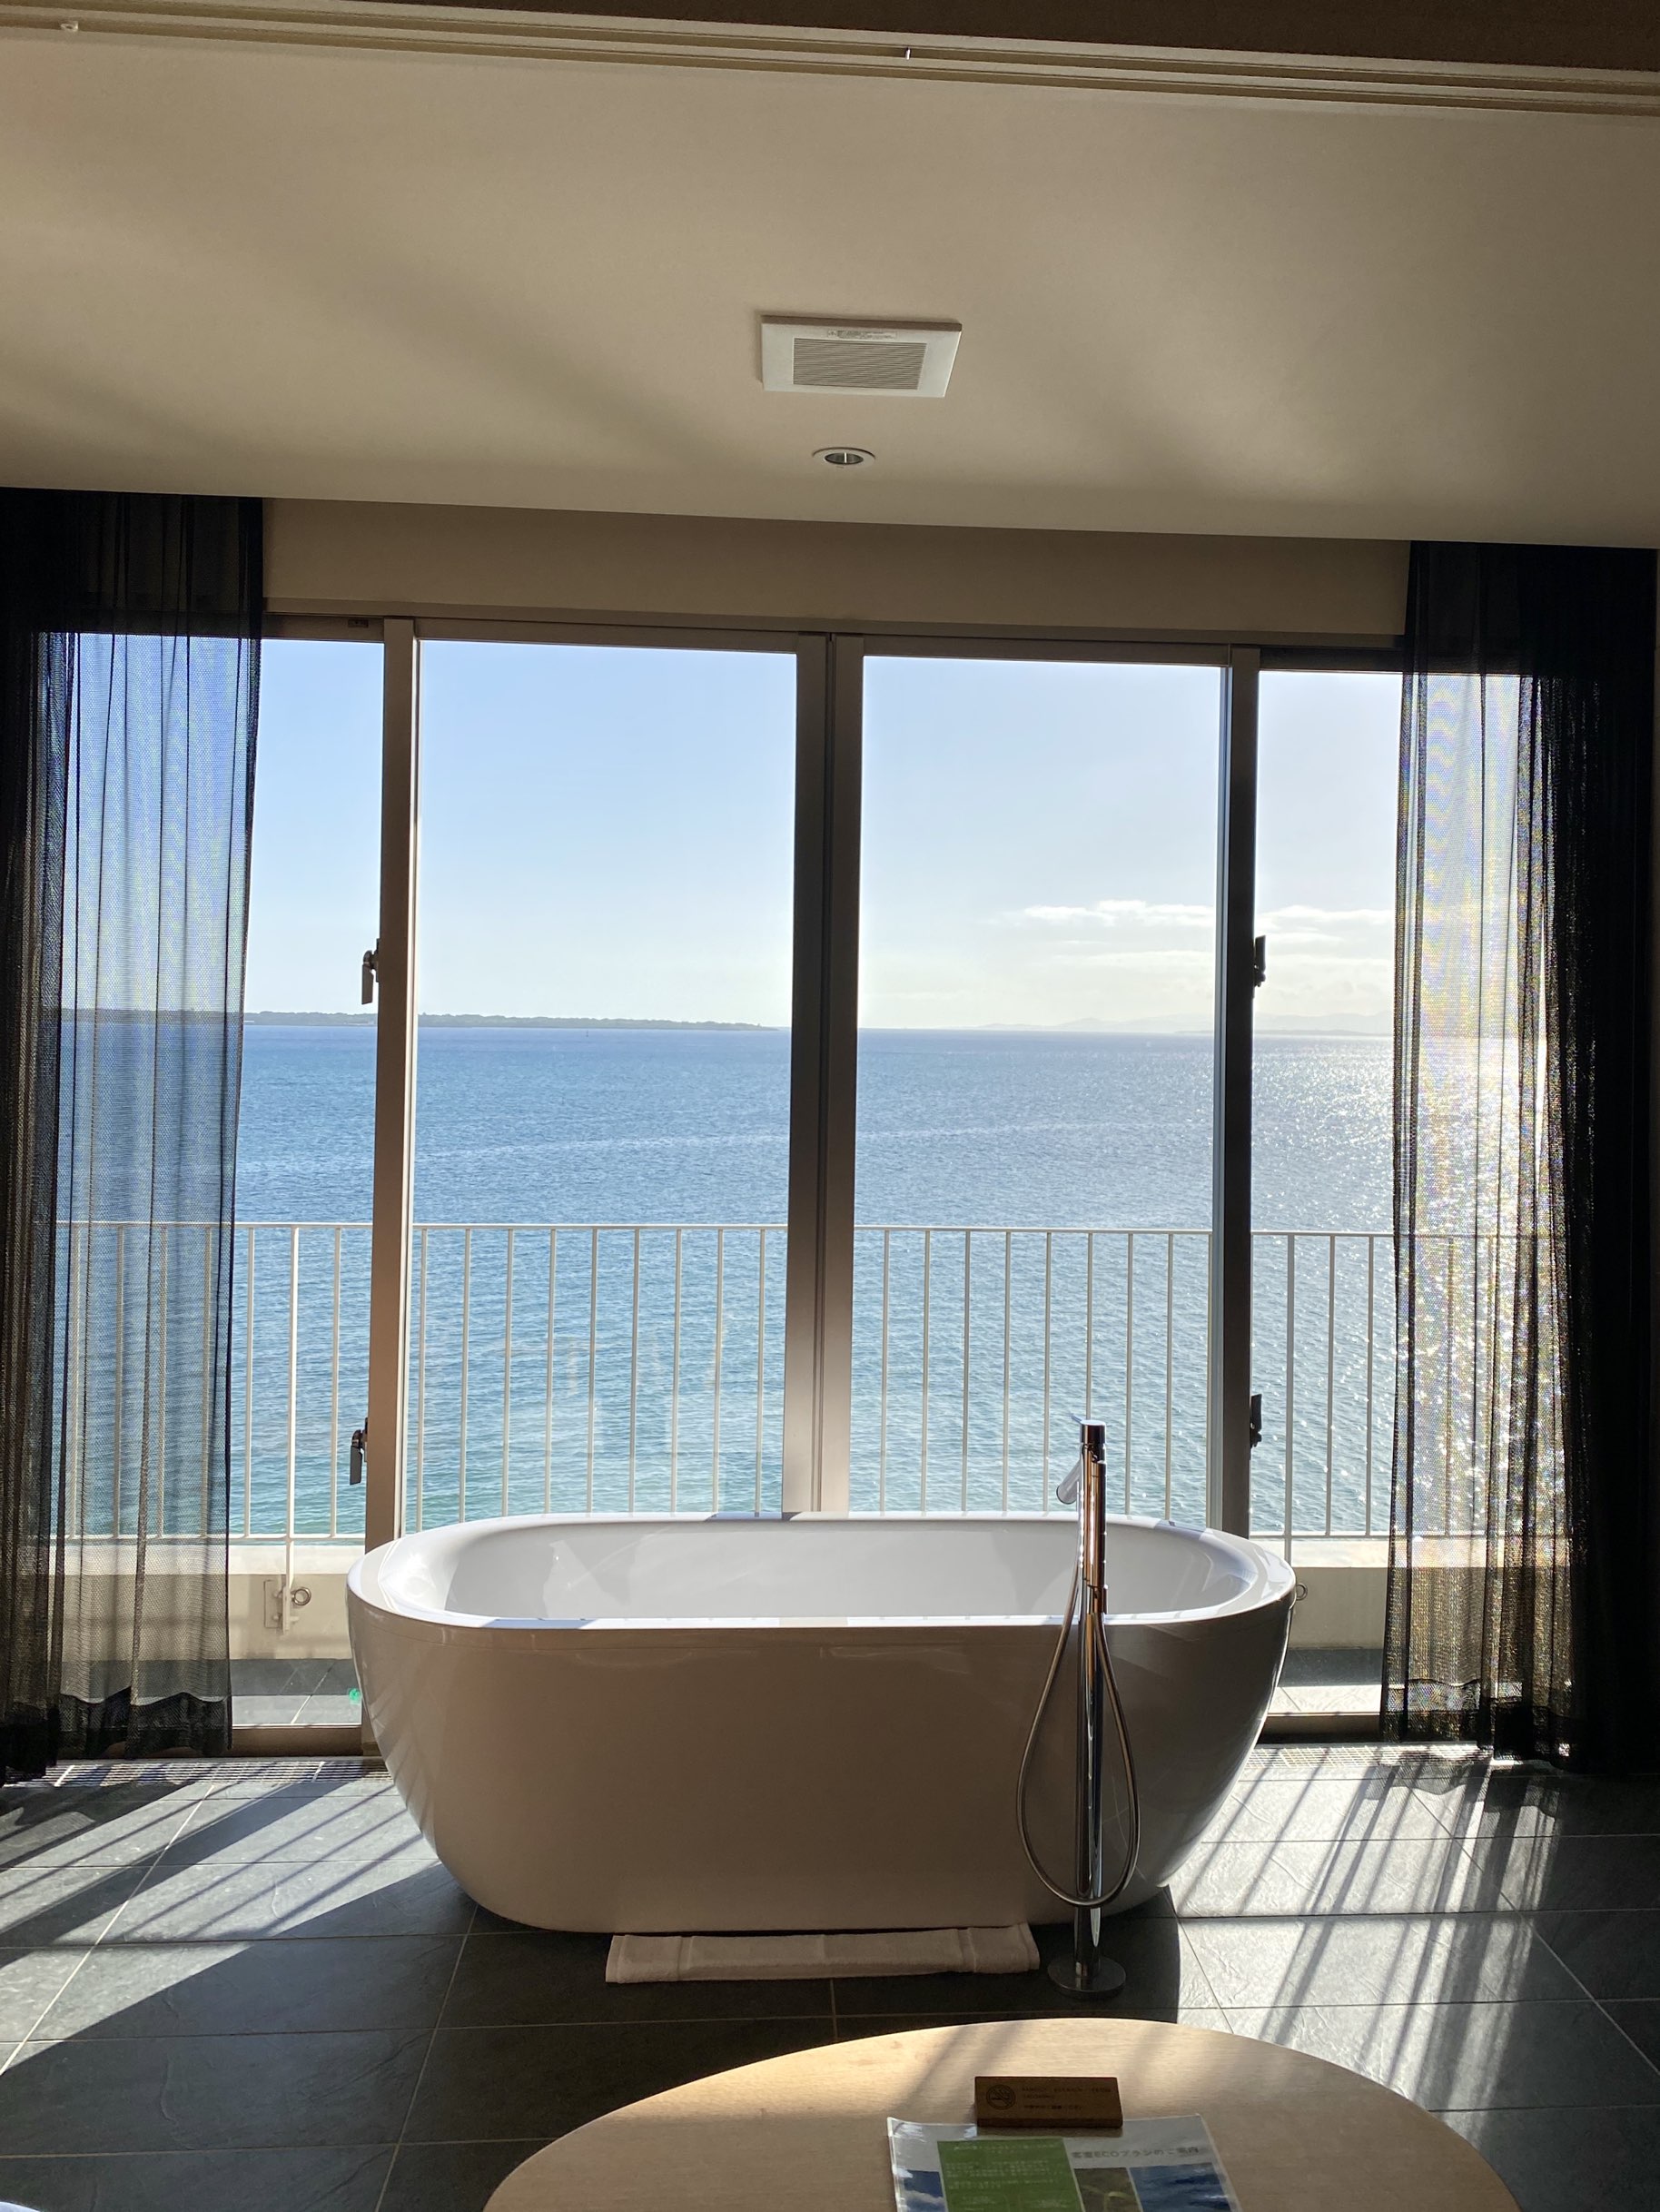 [石垣岛]浴缸在房间里🛁日落很危险..!阳光海滩酒店